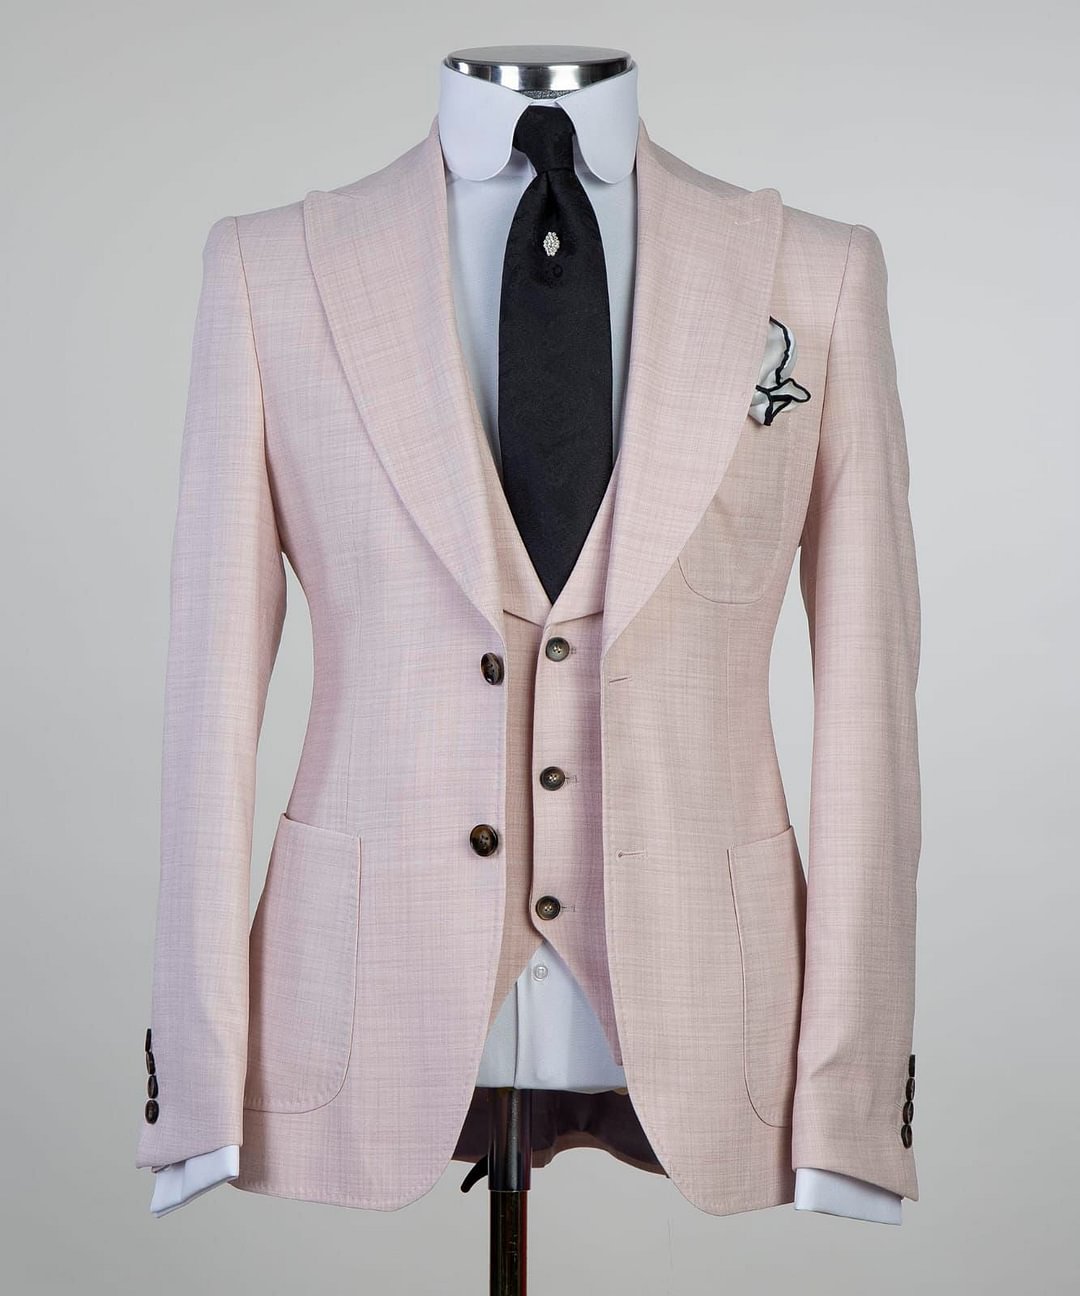 Men's lemonade pink 3pcs suit.